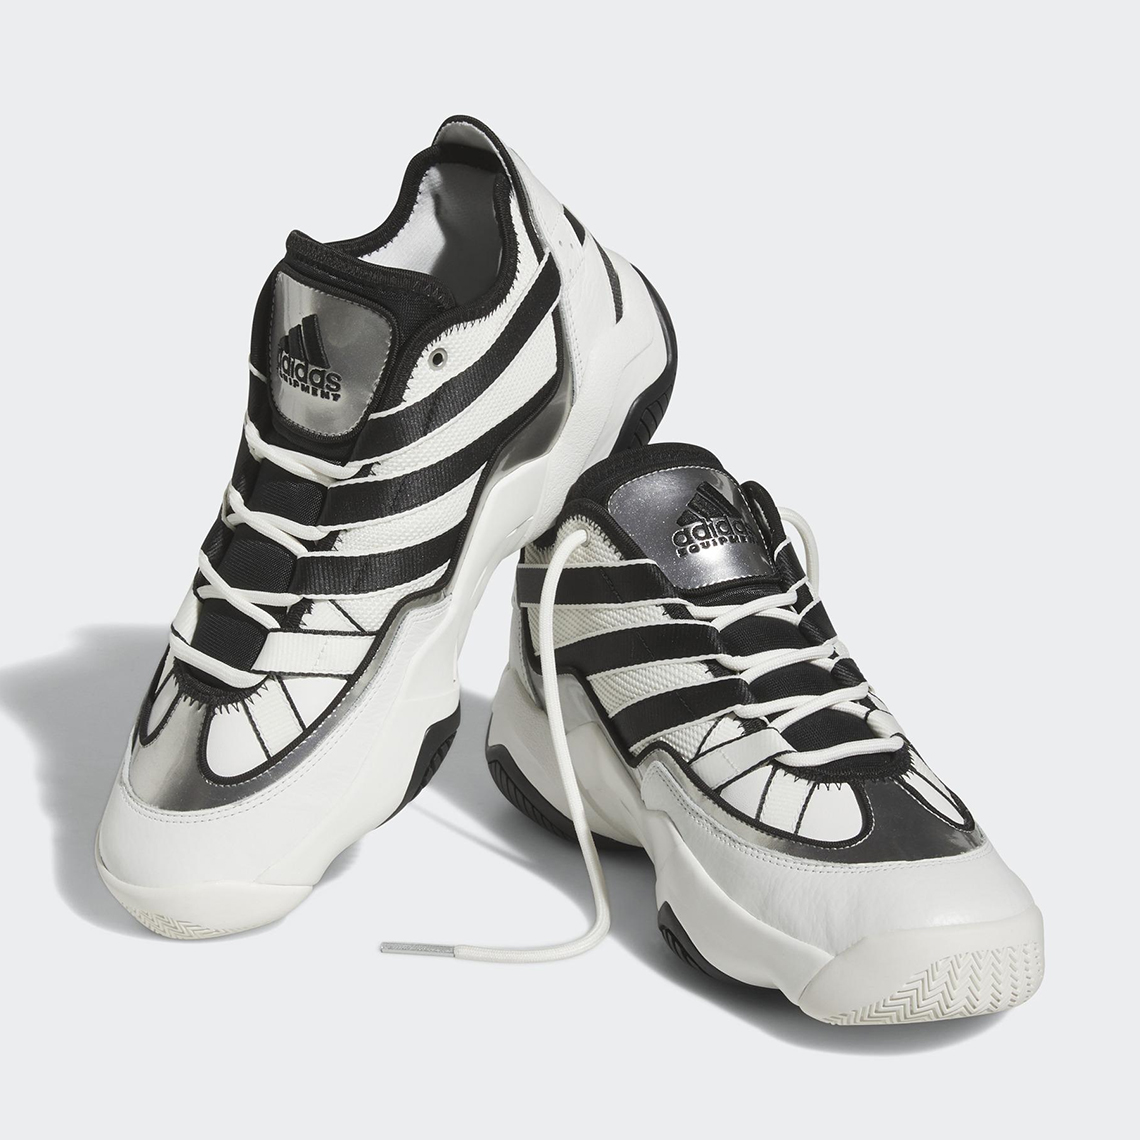 adidas schemes Top Ten 2010 White Black Silver Hr0099 5